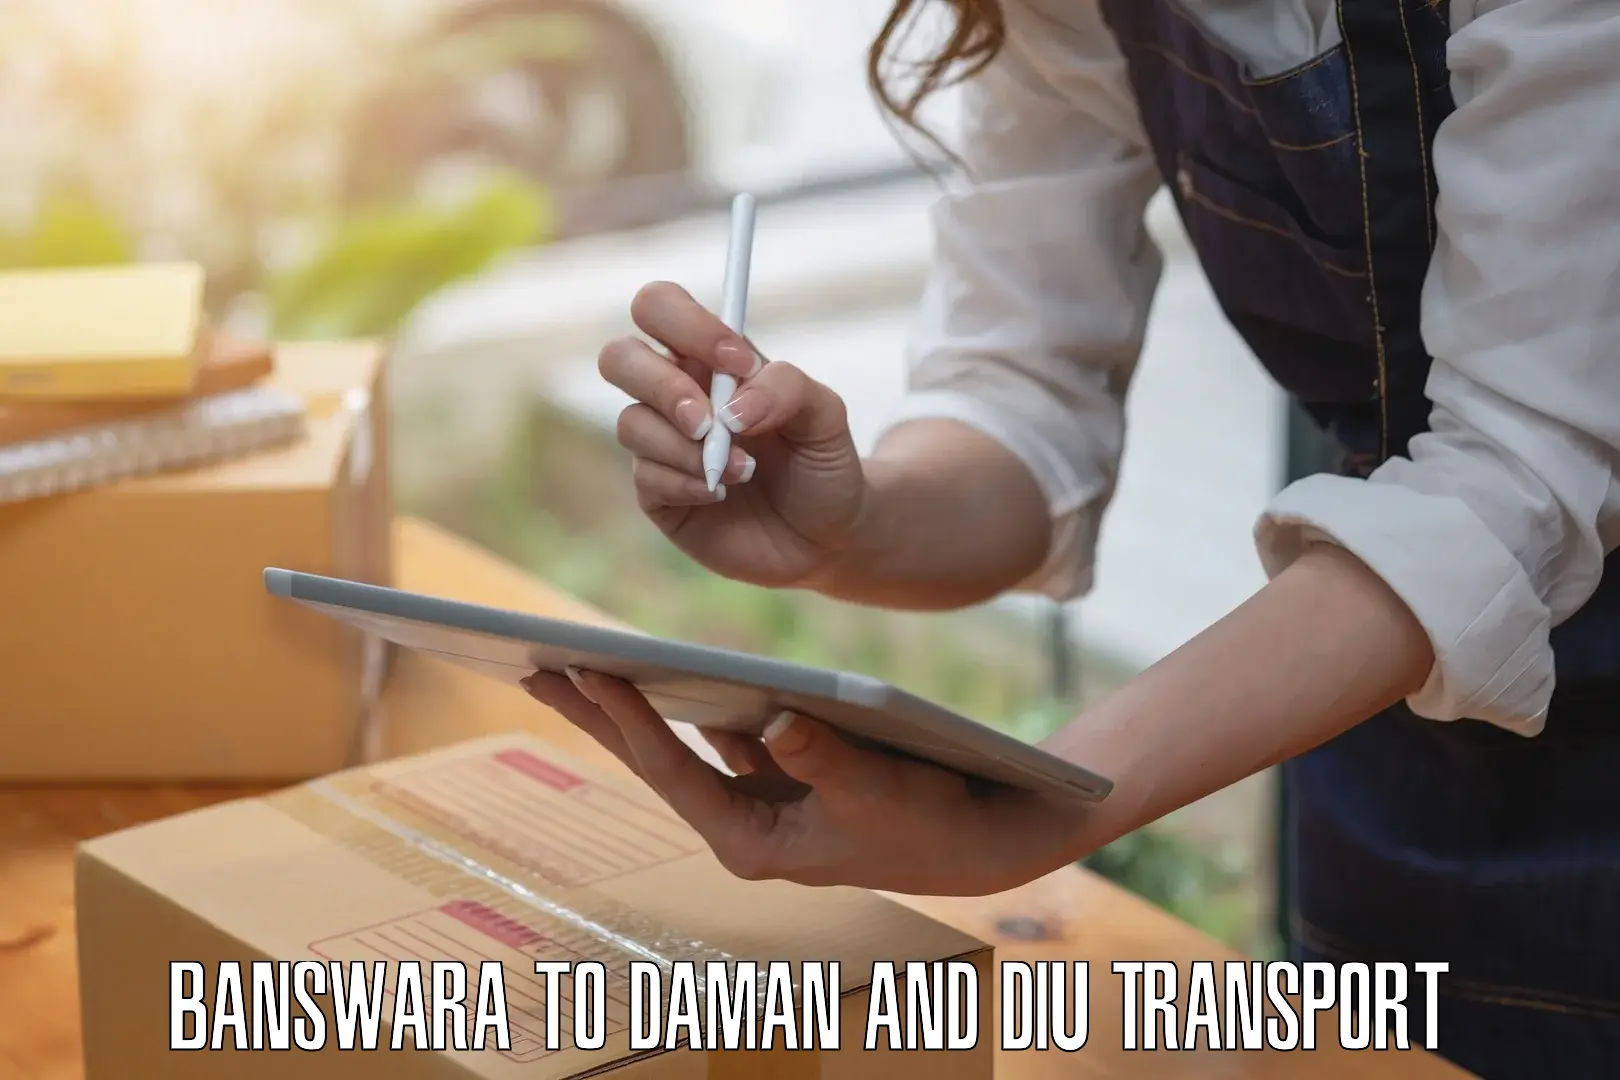 Pick up transport service Banswara to Diu